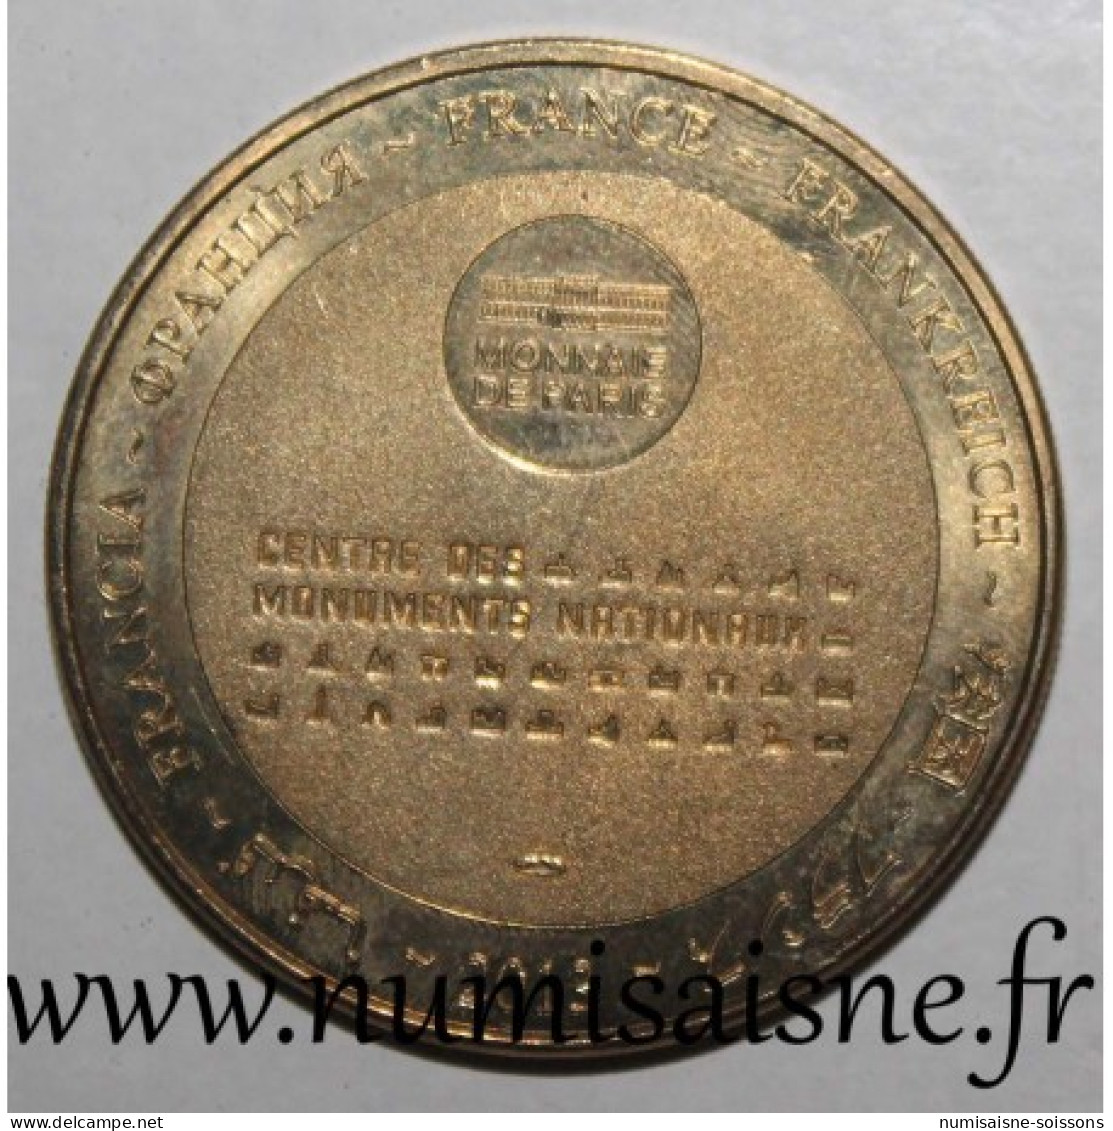 37 - AZAY LE RIDEAU - CHATEAU - Monnaie De Paris - 2013 - 2013